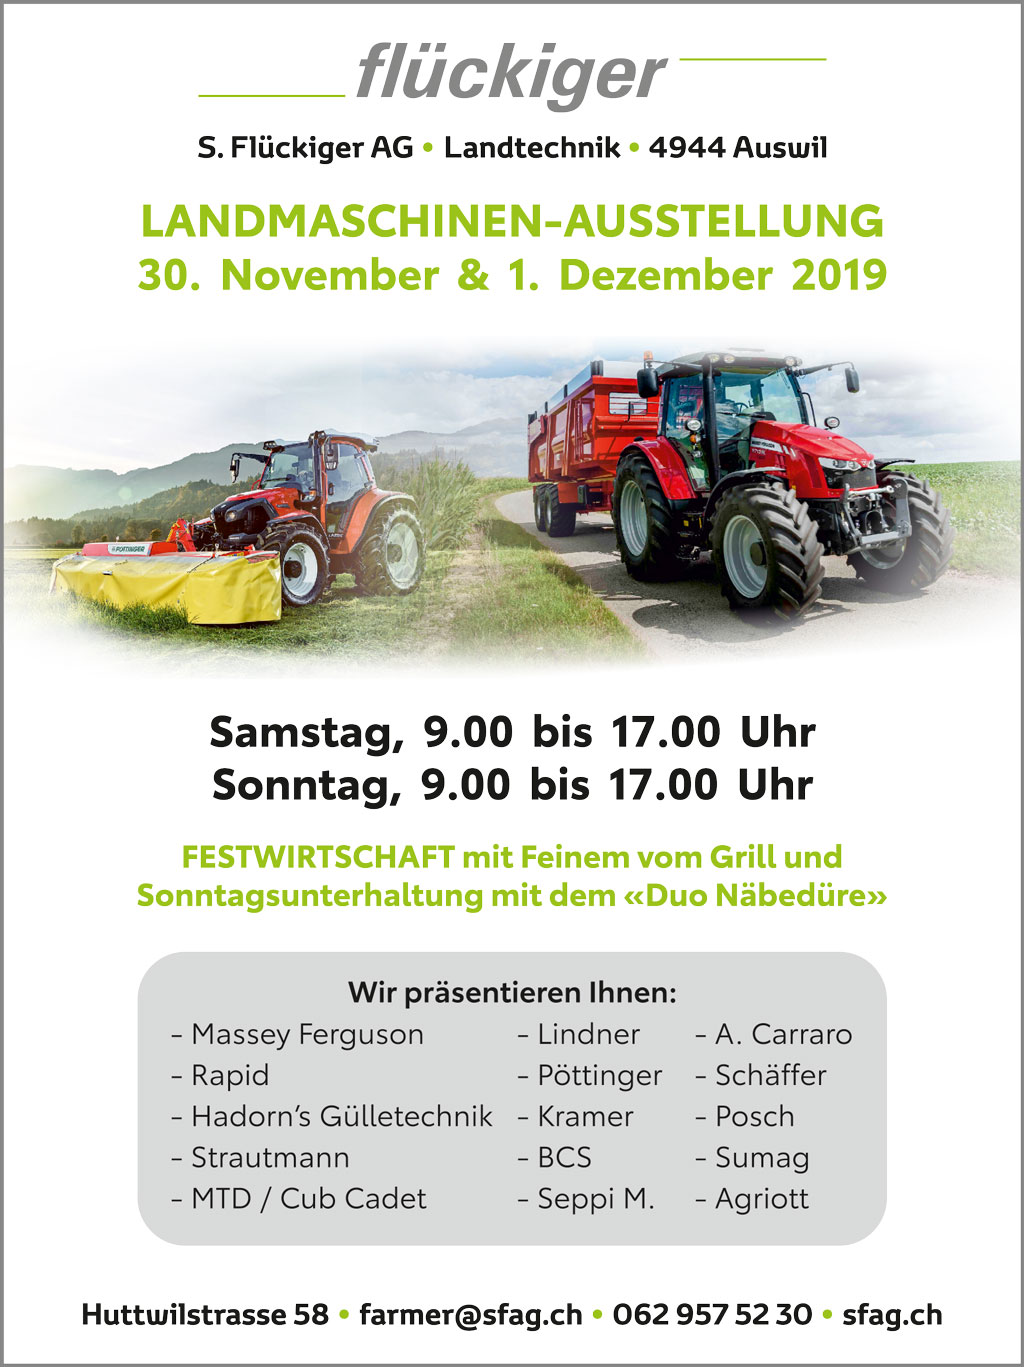 flückiger Landtechnik – Grosse Landmaschinen-Ausstellung vom Samstag, 30. November 2019 & Sonntag, 1. Dezember 2019